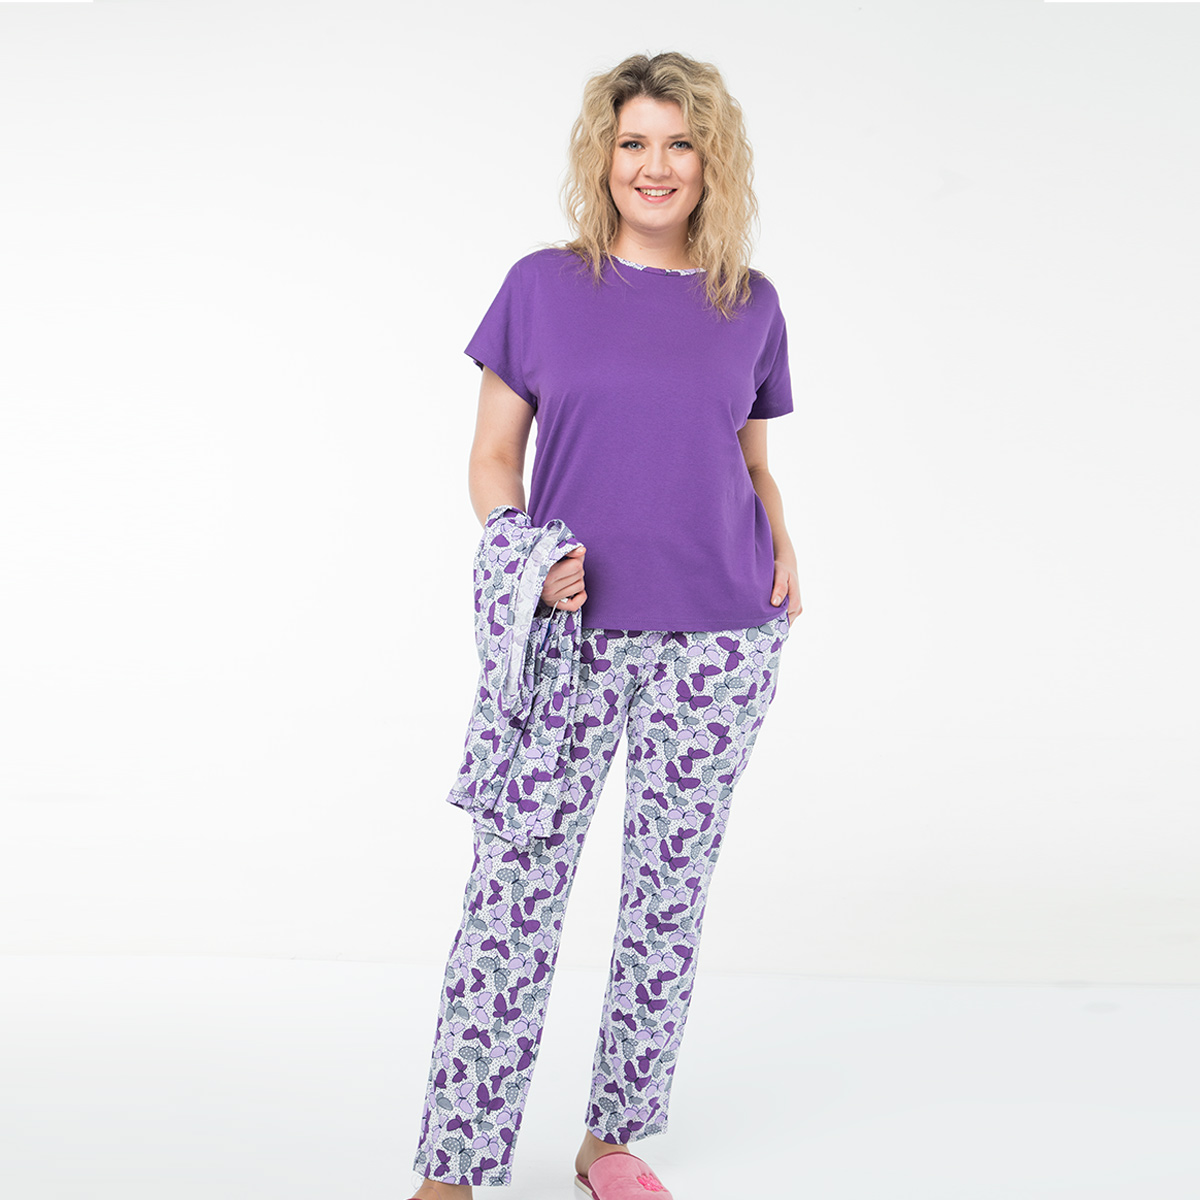 Пижама, трикотаж, жилет, футболка, брюки, фиолетовый